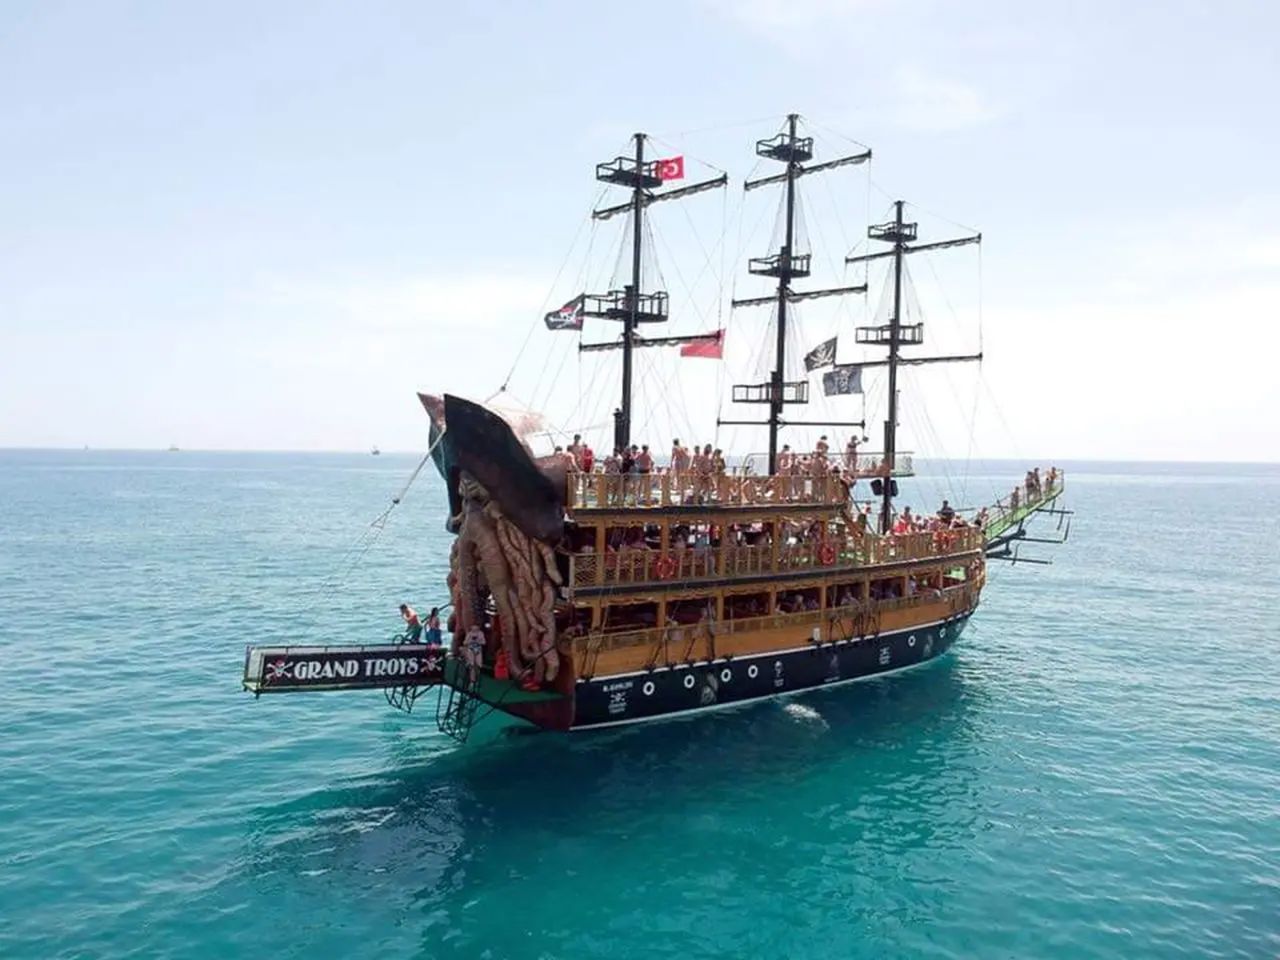 Пиратская яхта в Алании | Цена 20€, отзывы, описание экскурсии